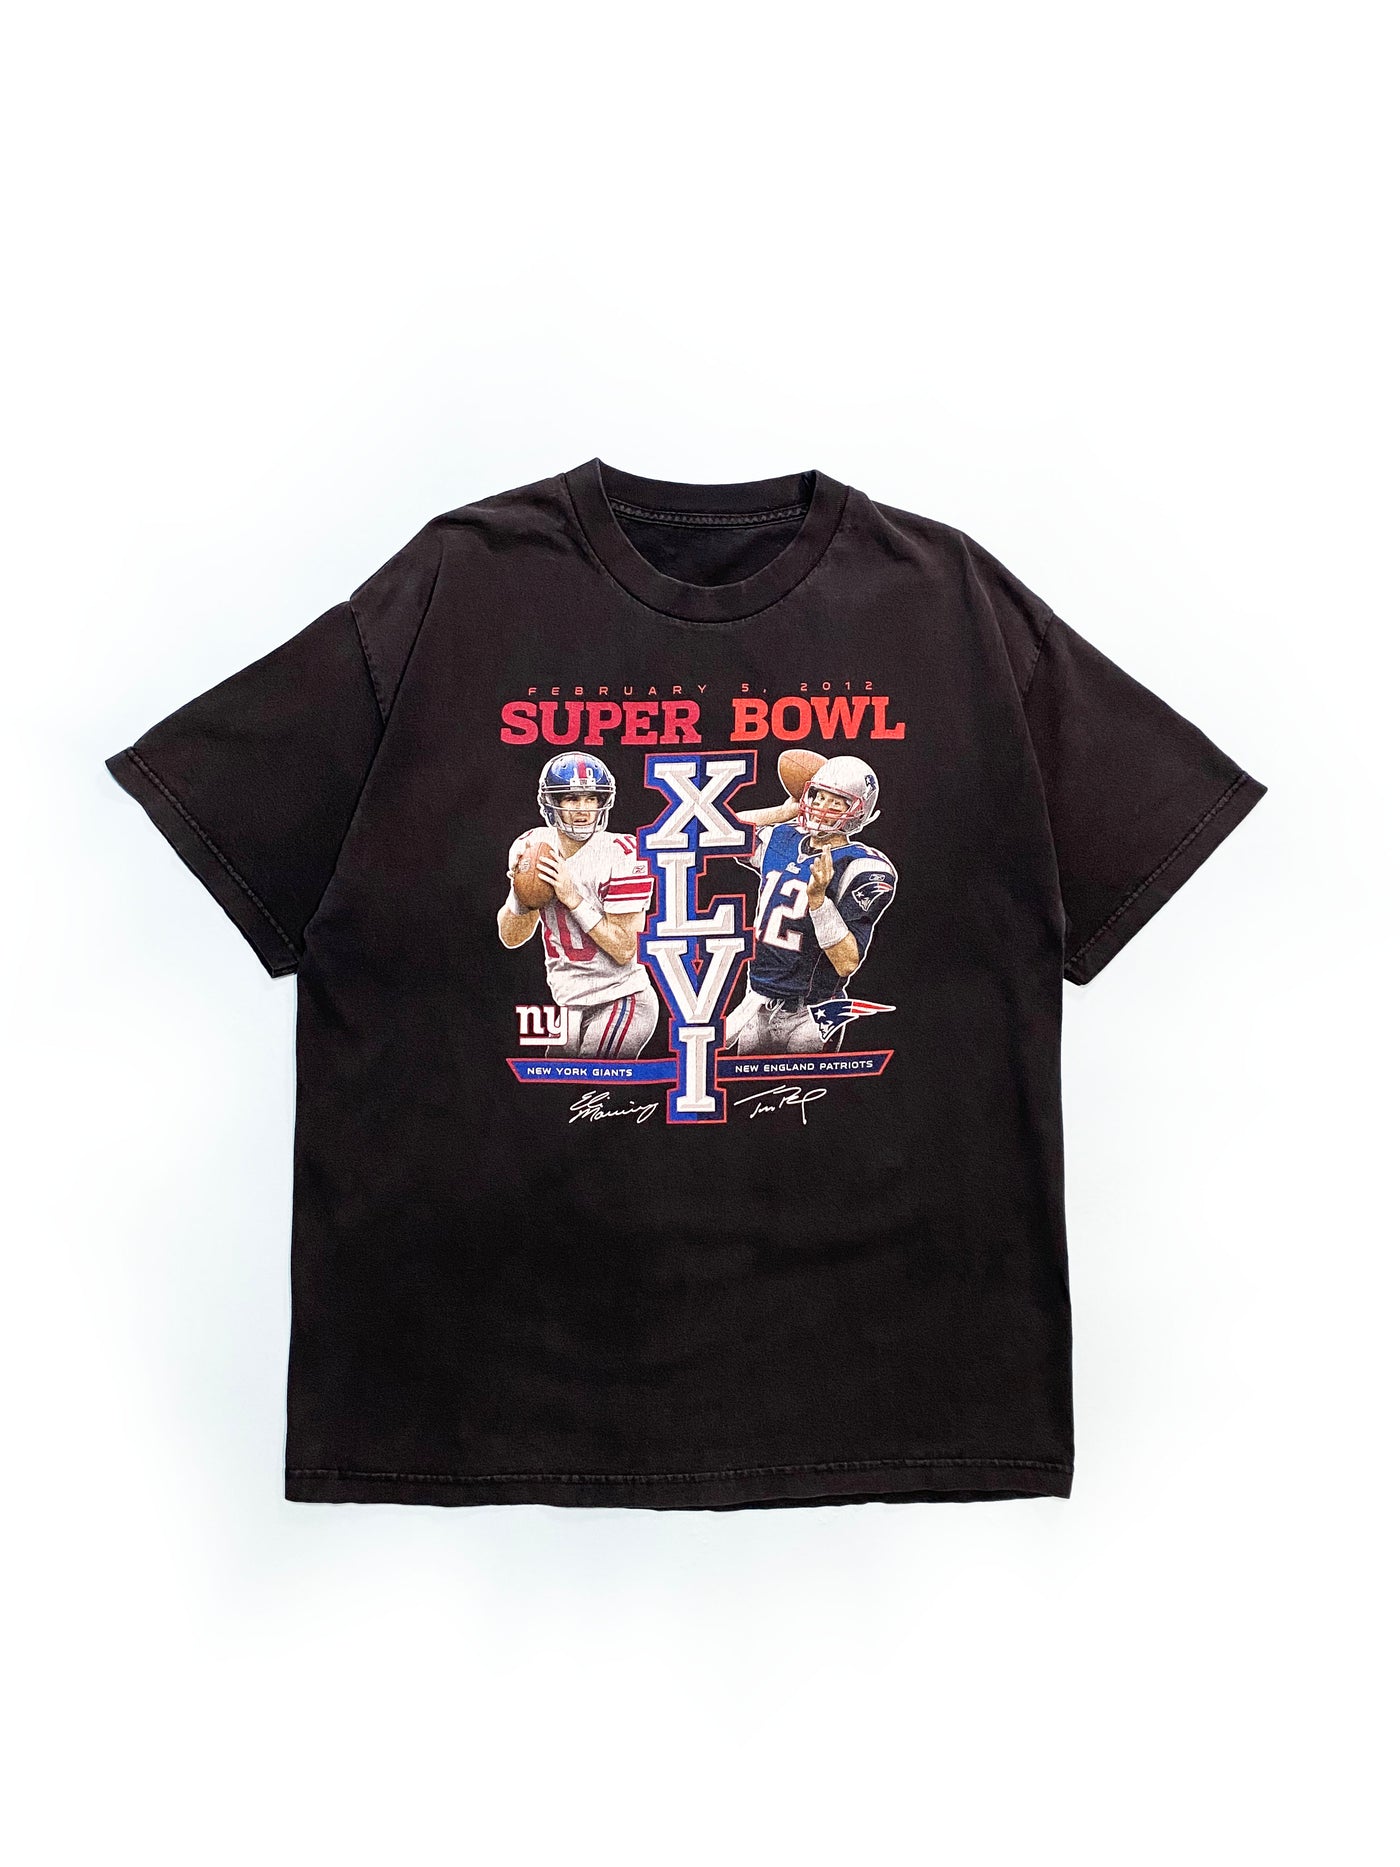 2012 Super Bowl XLVI Giants vs Patriots T-Shirt